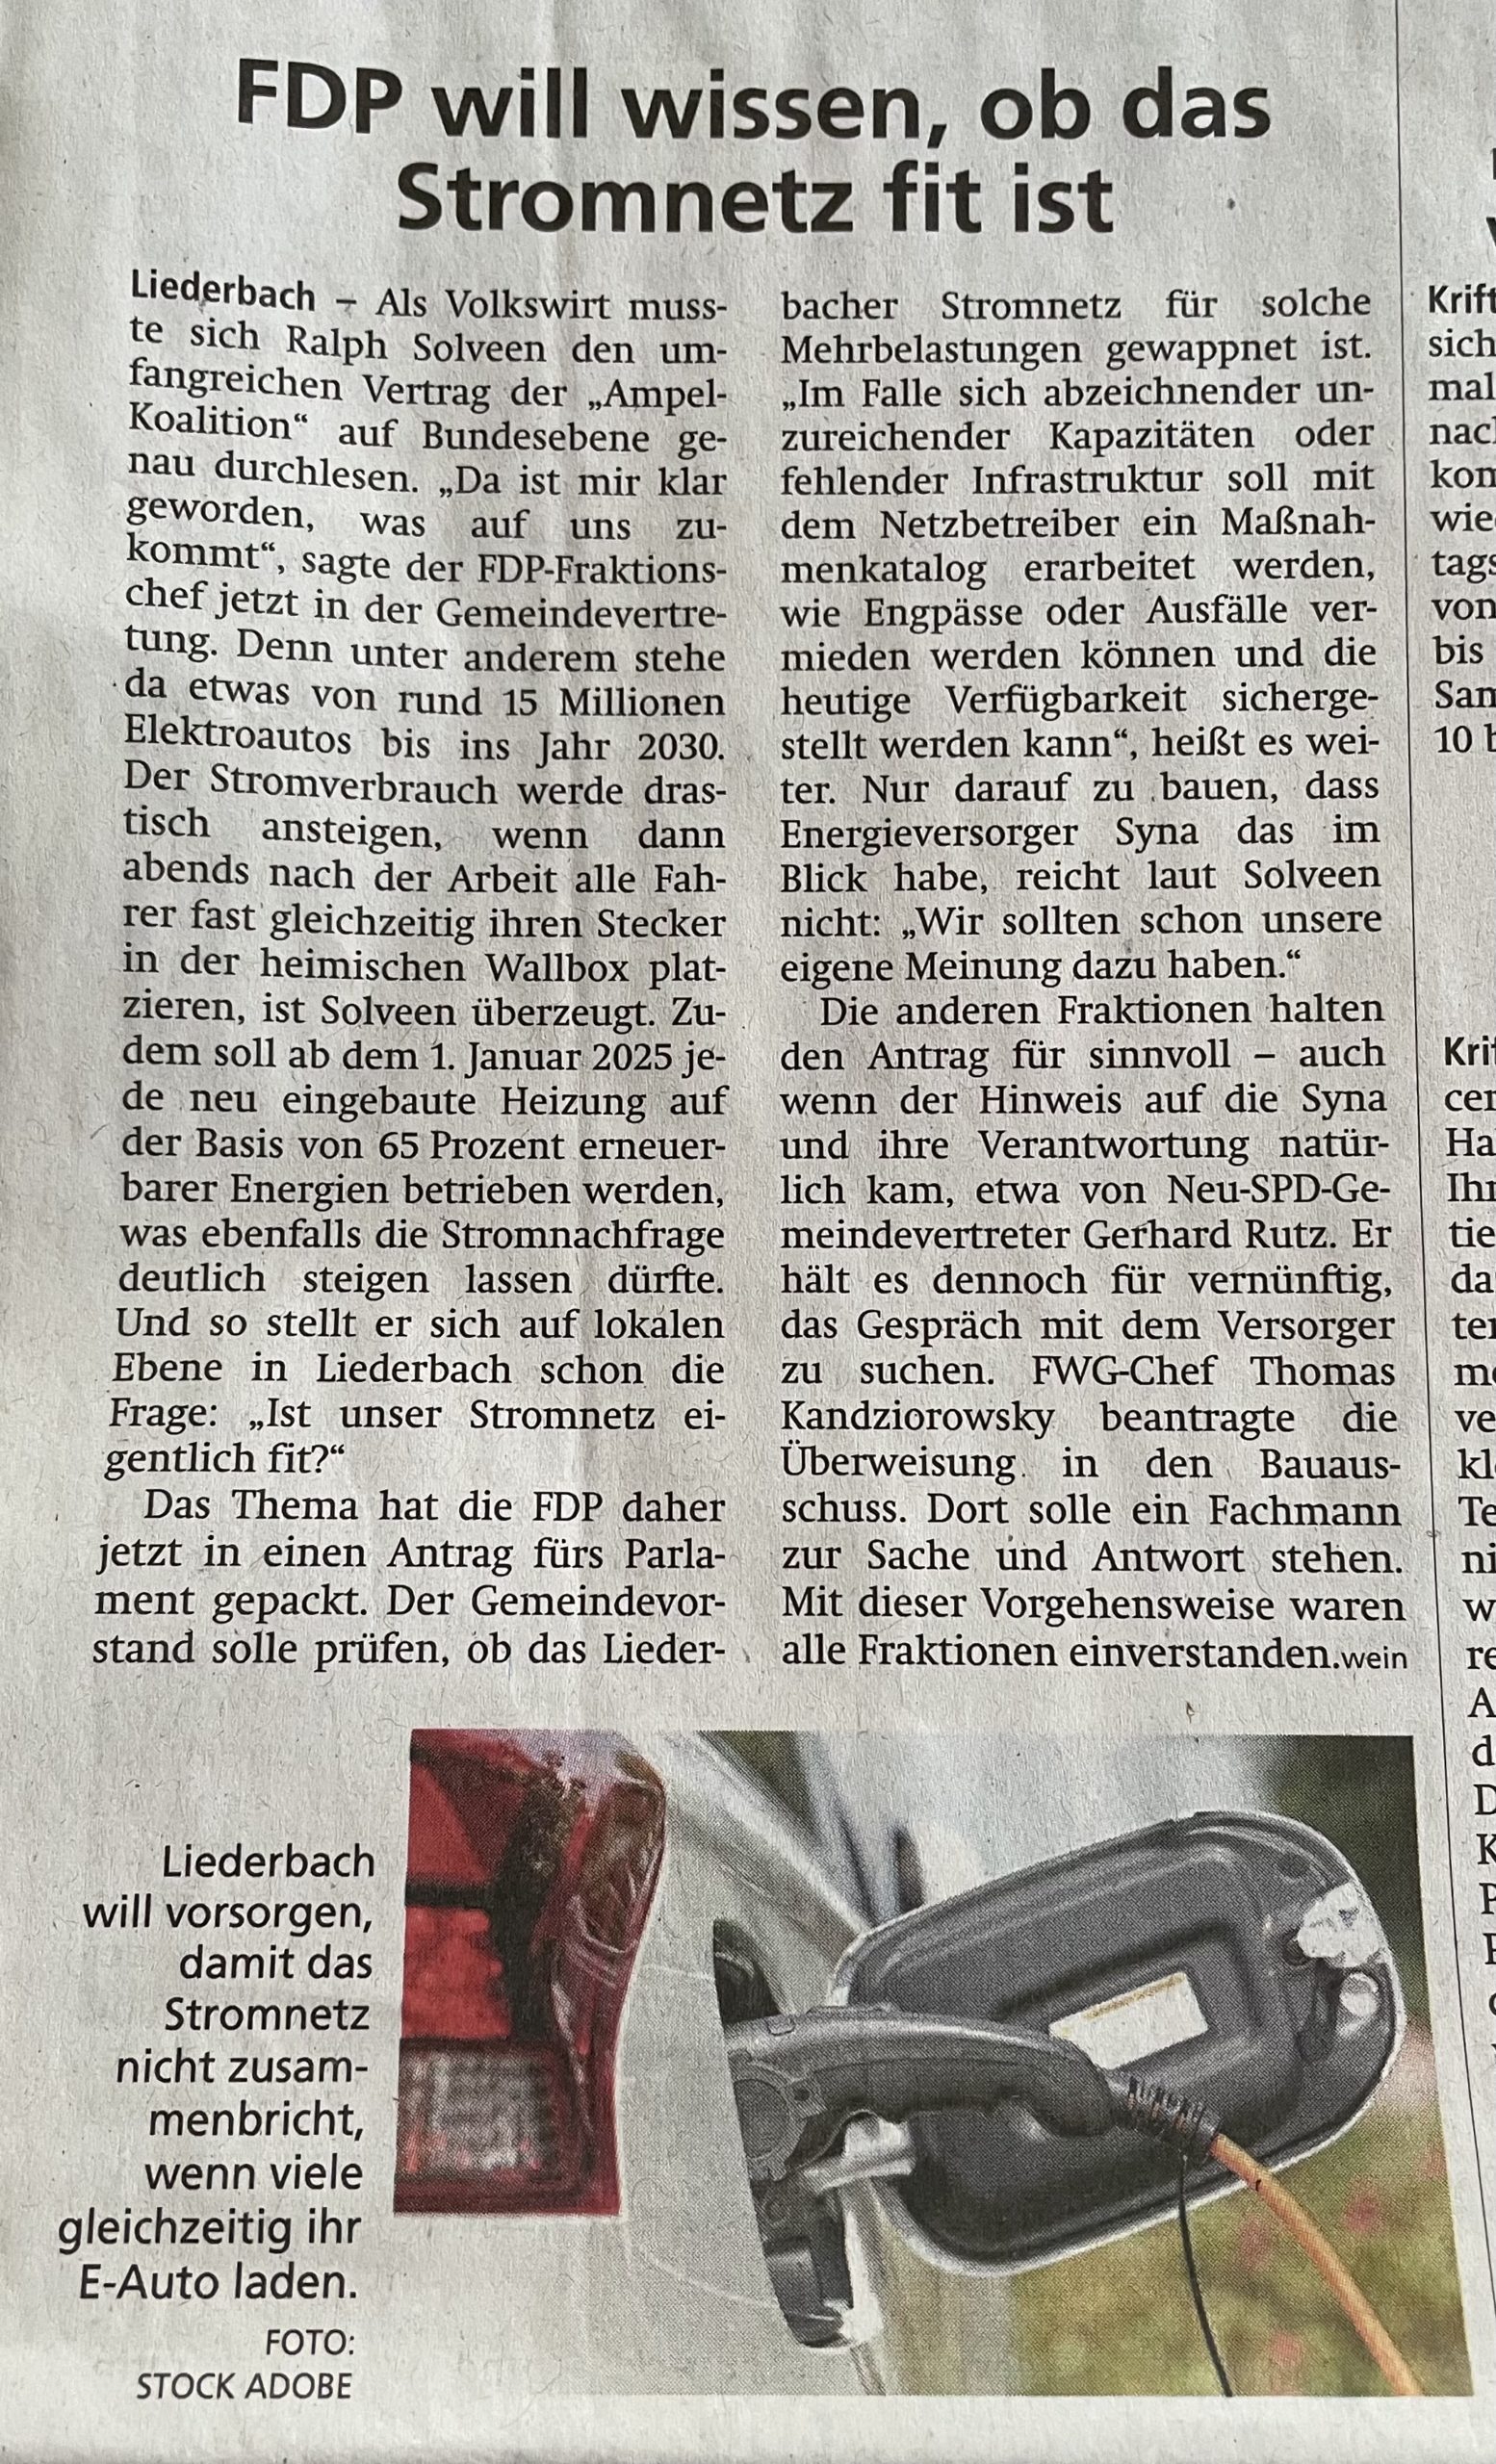 Snippet aus dem Höchster Kreisblatt vom 6.Januar 2022 - "FDP will wissen, ob das Stromnetz fit ist" (c) Höchster Kreisblatt vom 06.01.2022